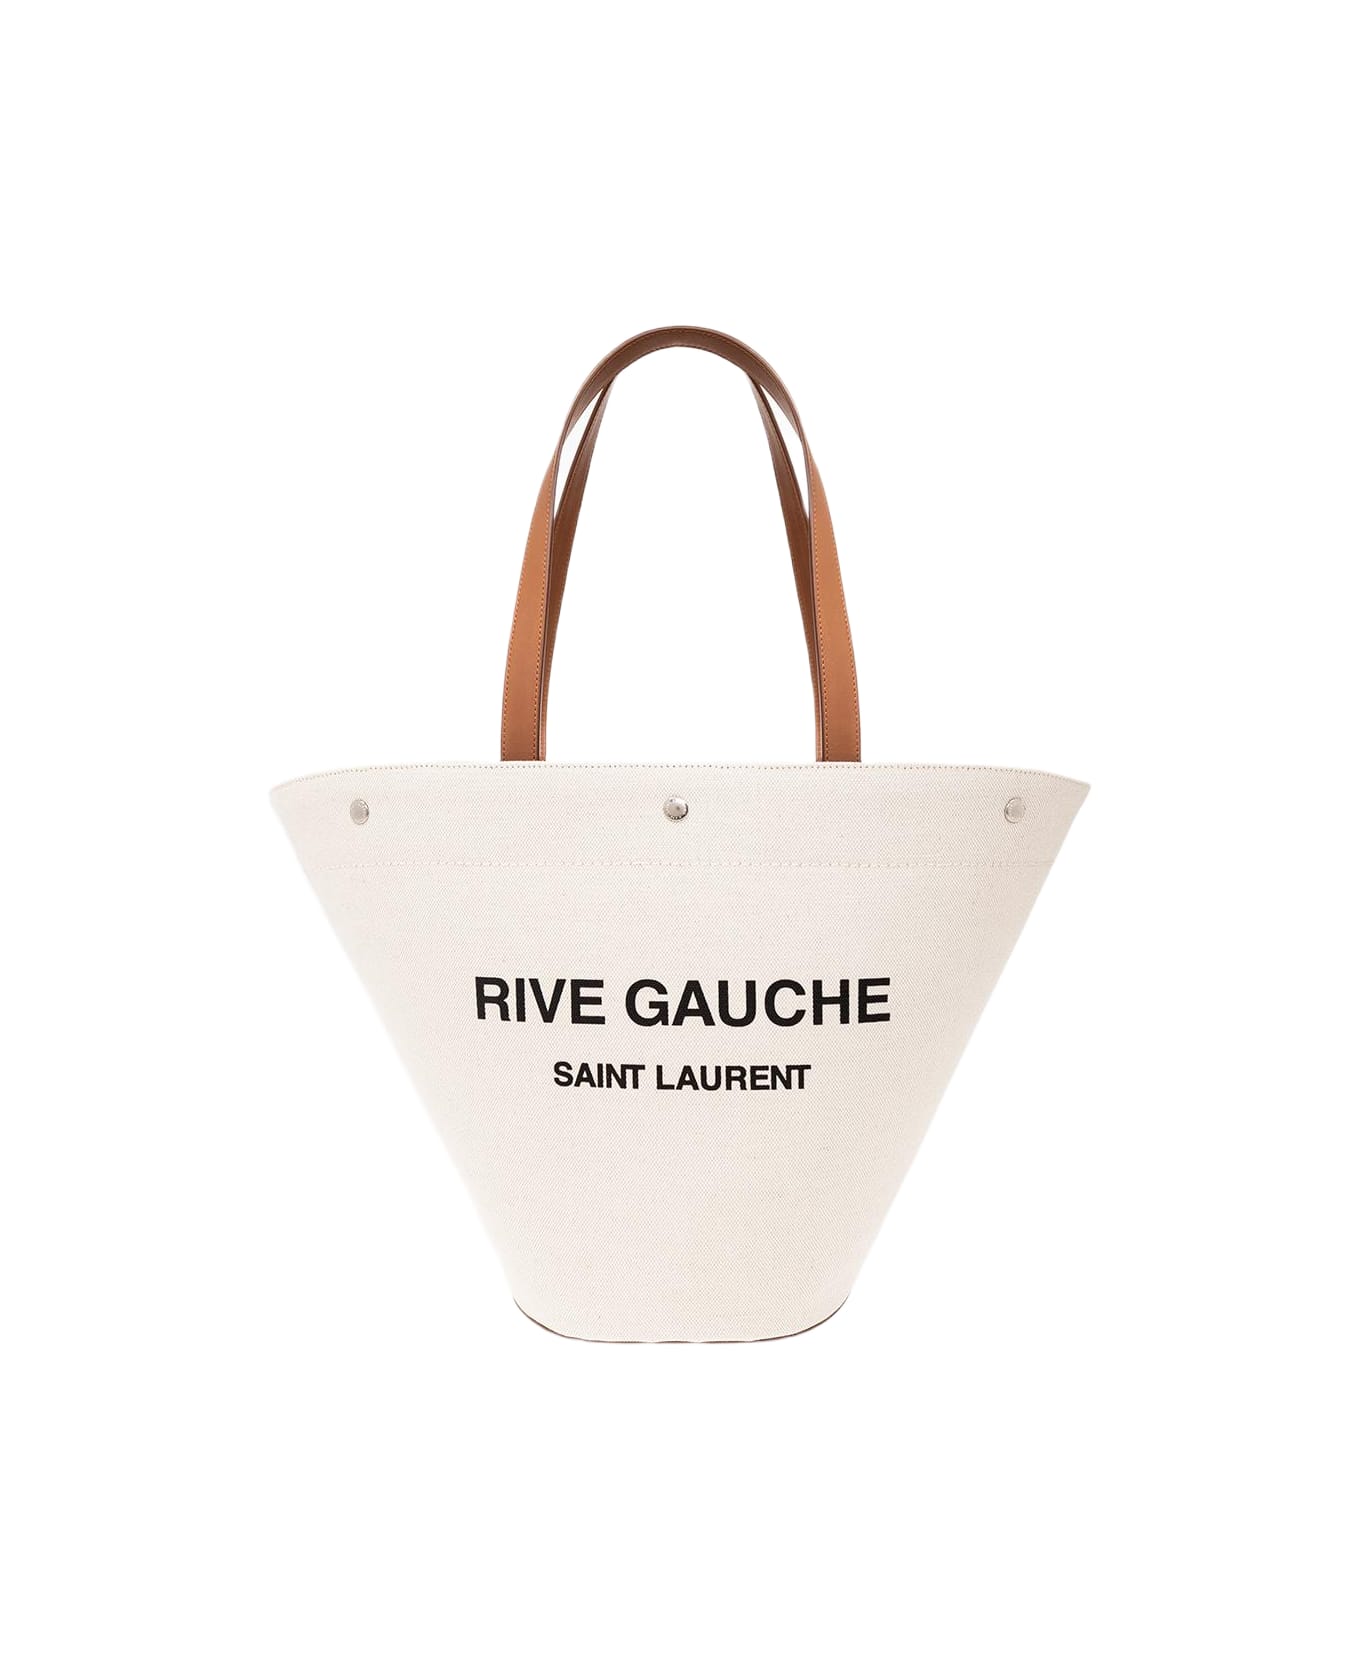 Saint Laurent Rive Gauche Shopper Bag - Greggio/nero/brick トートバッグ